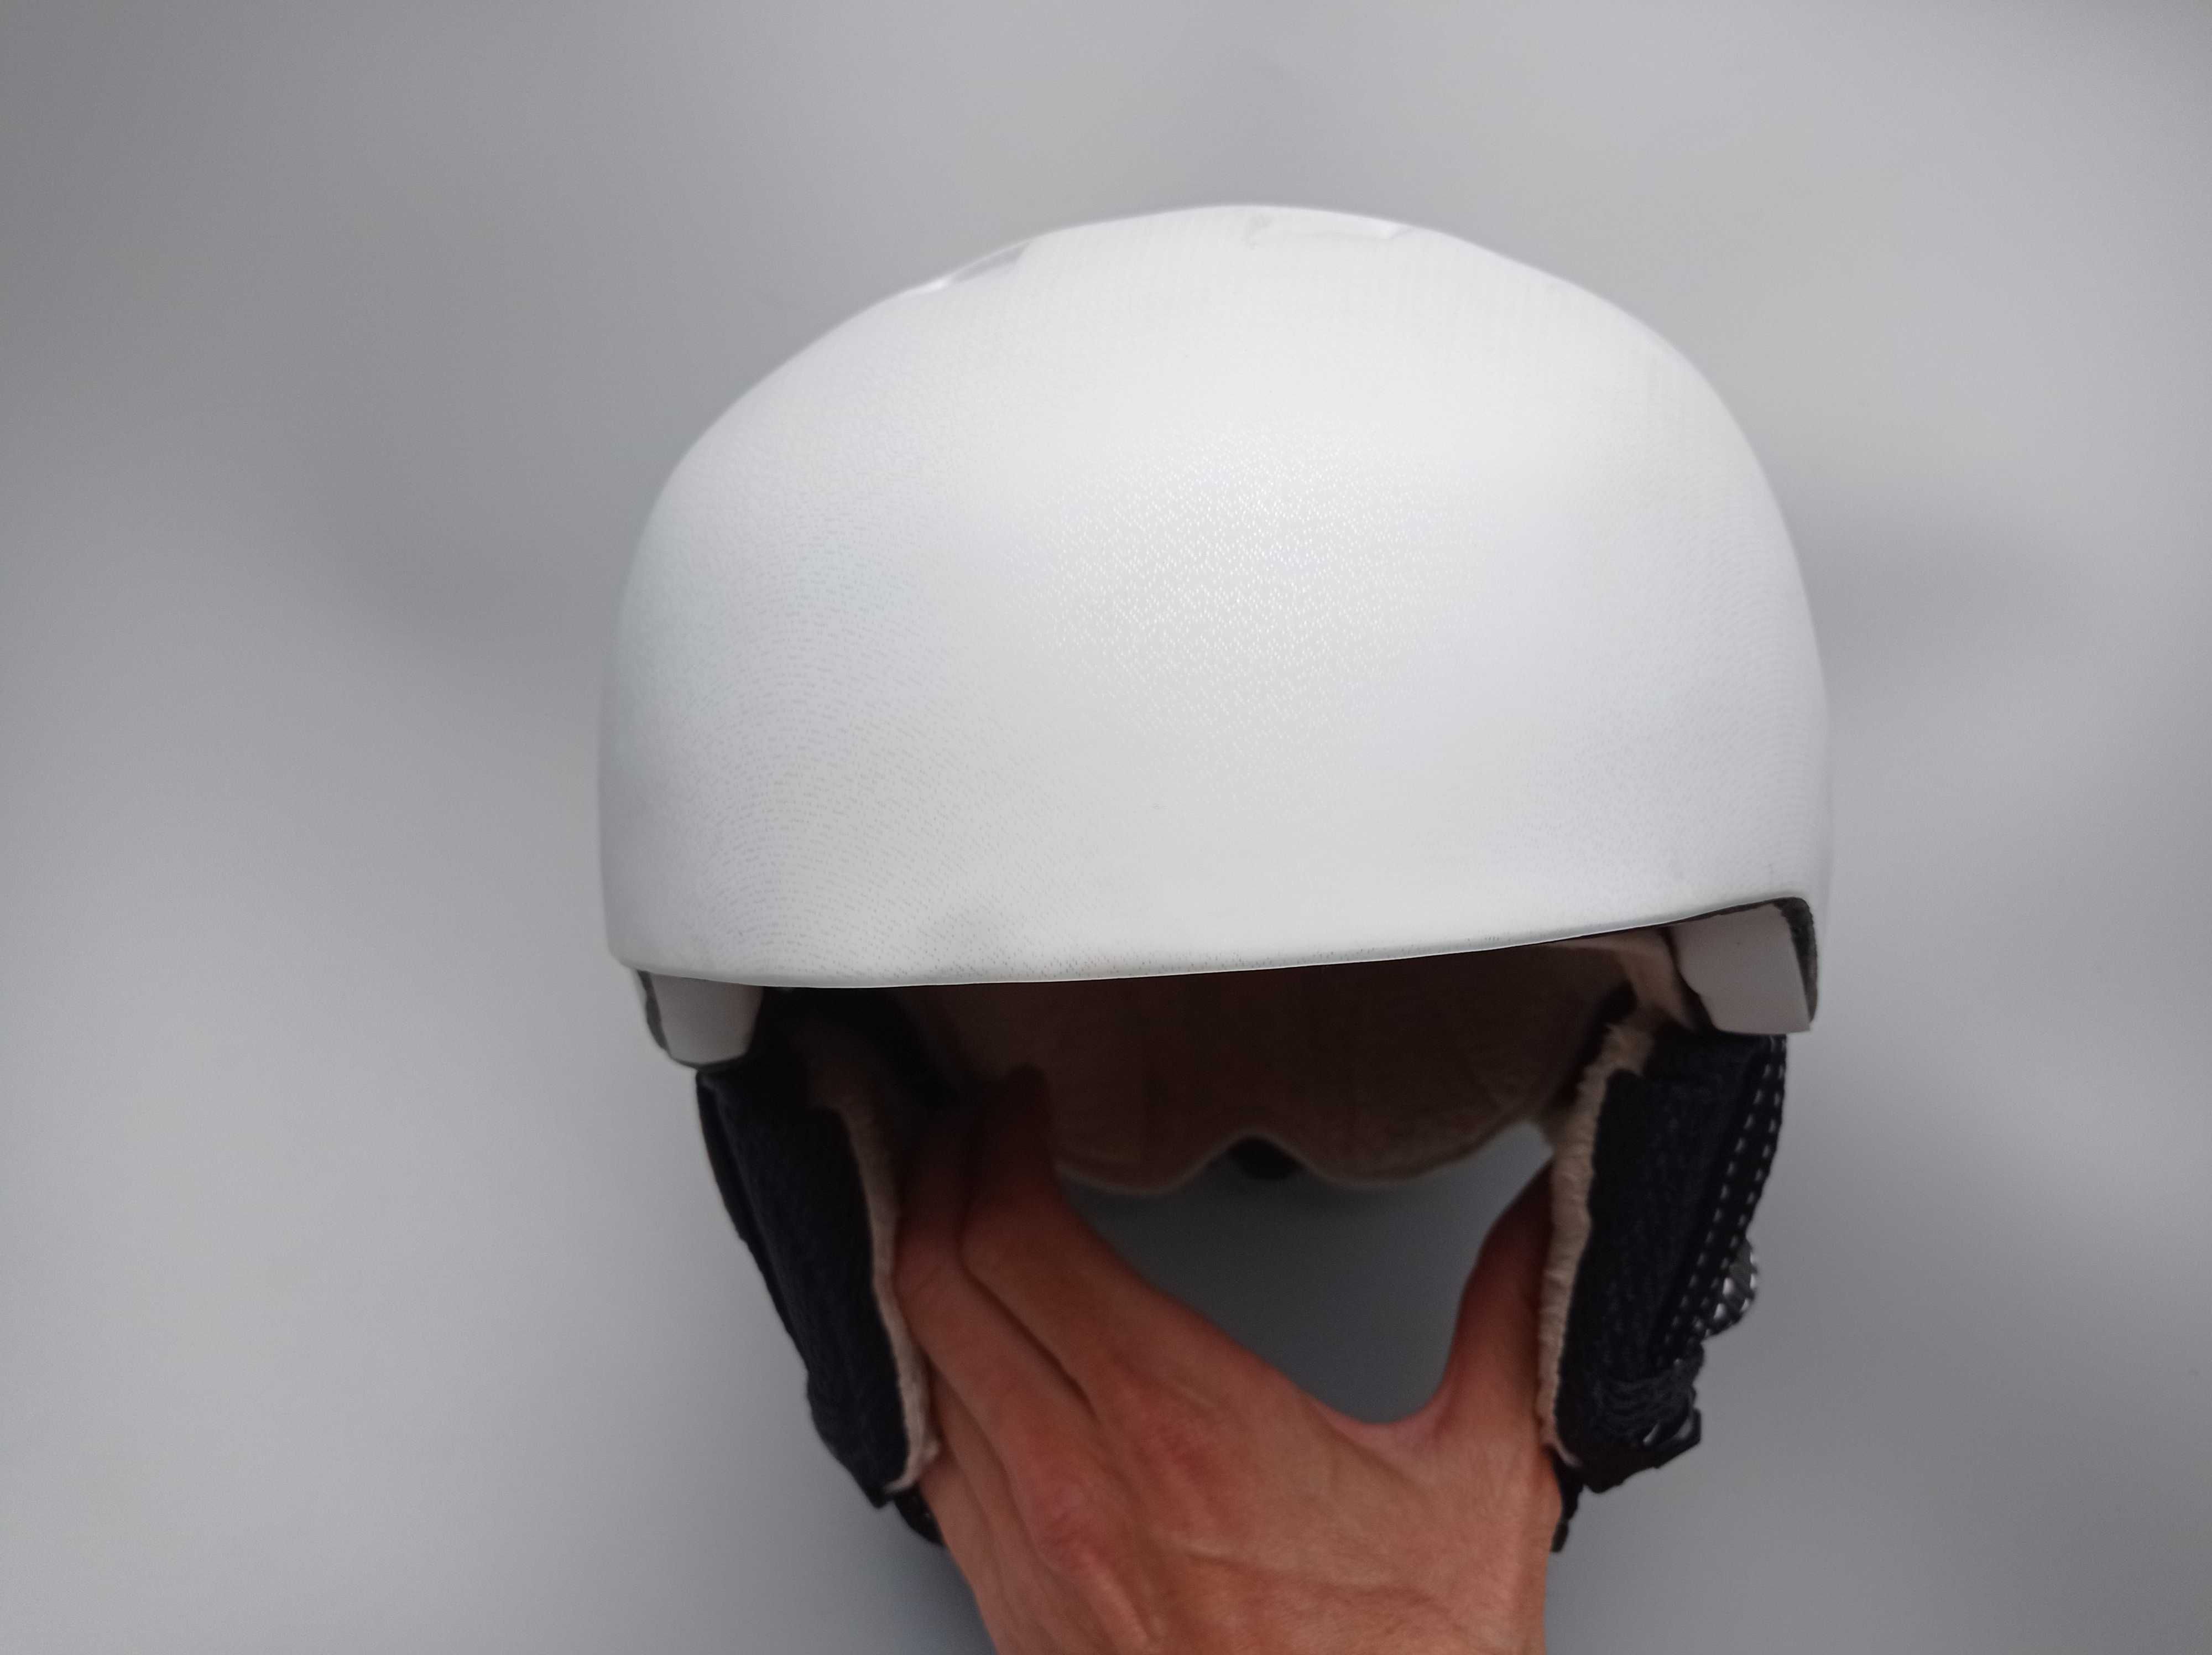 Горнолыжный шлем TCM Tchibo, размер 51-55см, Германия, зимний детский